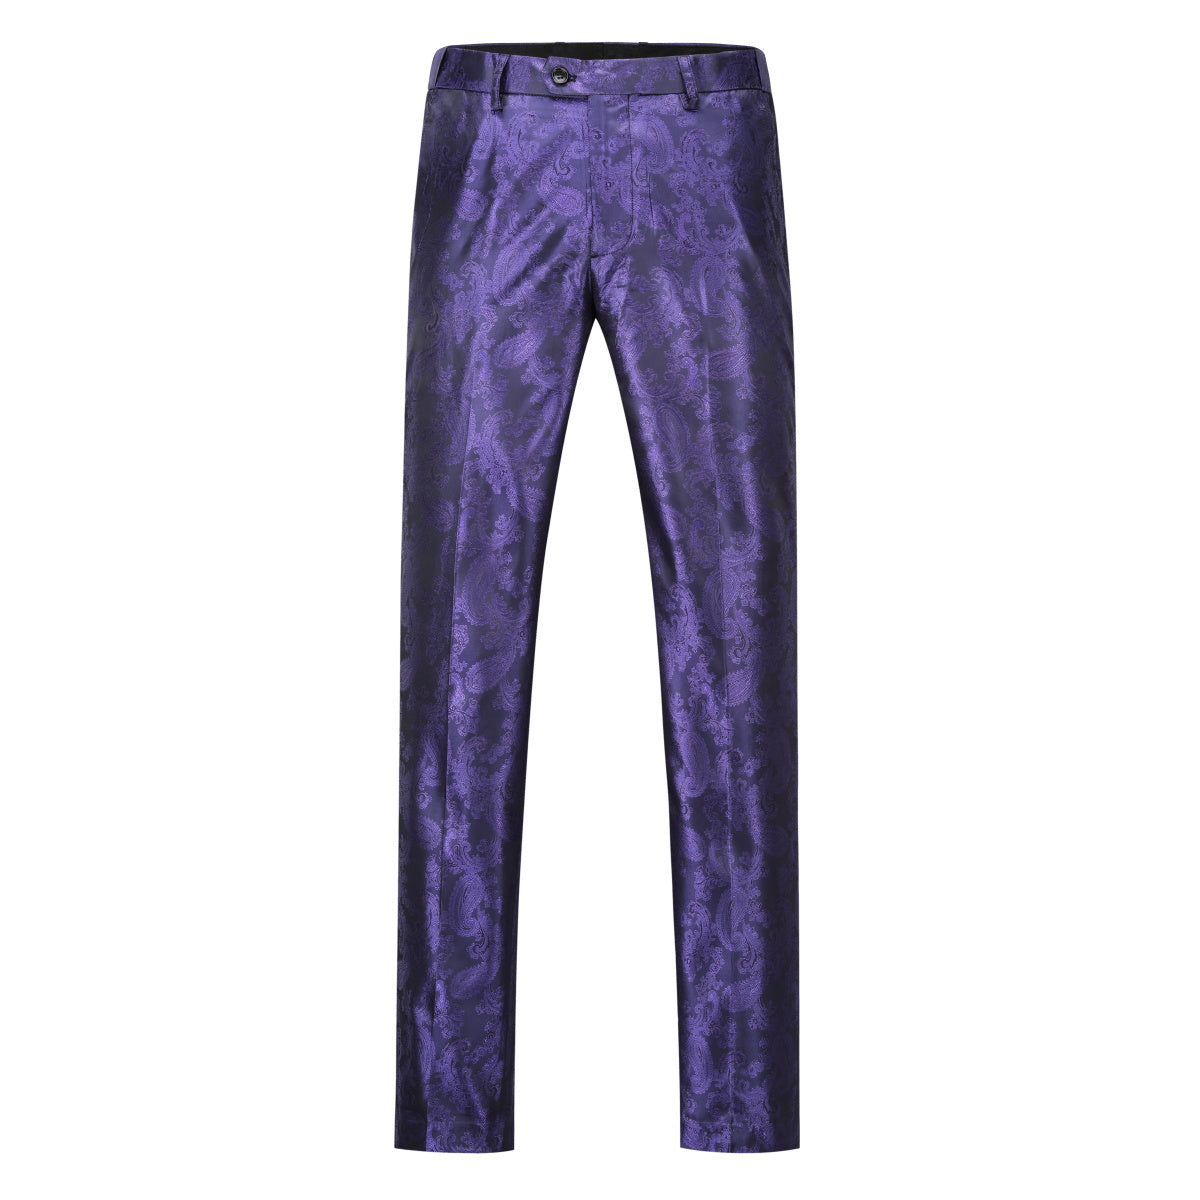 2-Piece Slim Fit Paisley Fashion Suit Purple